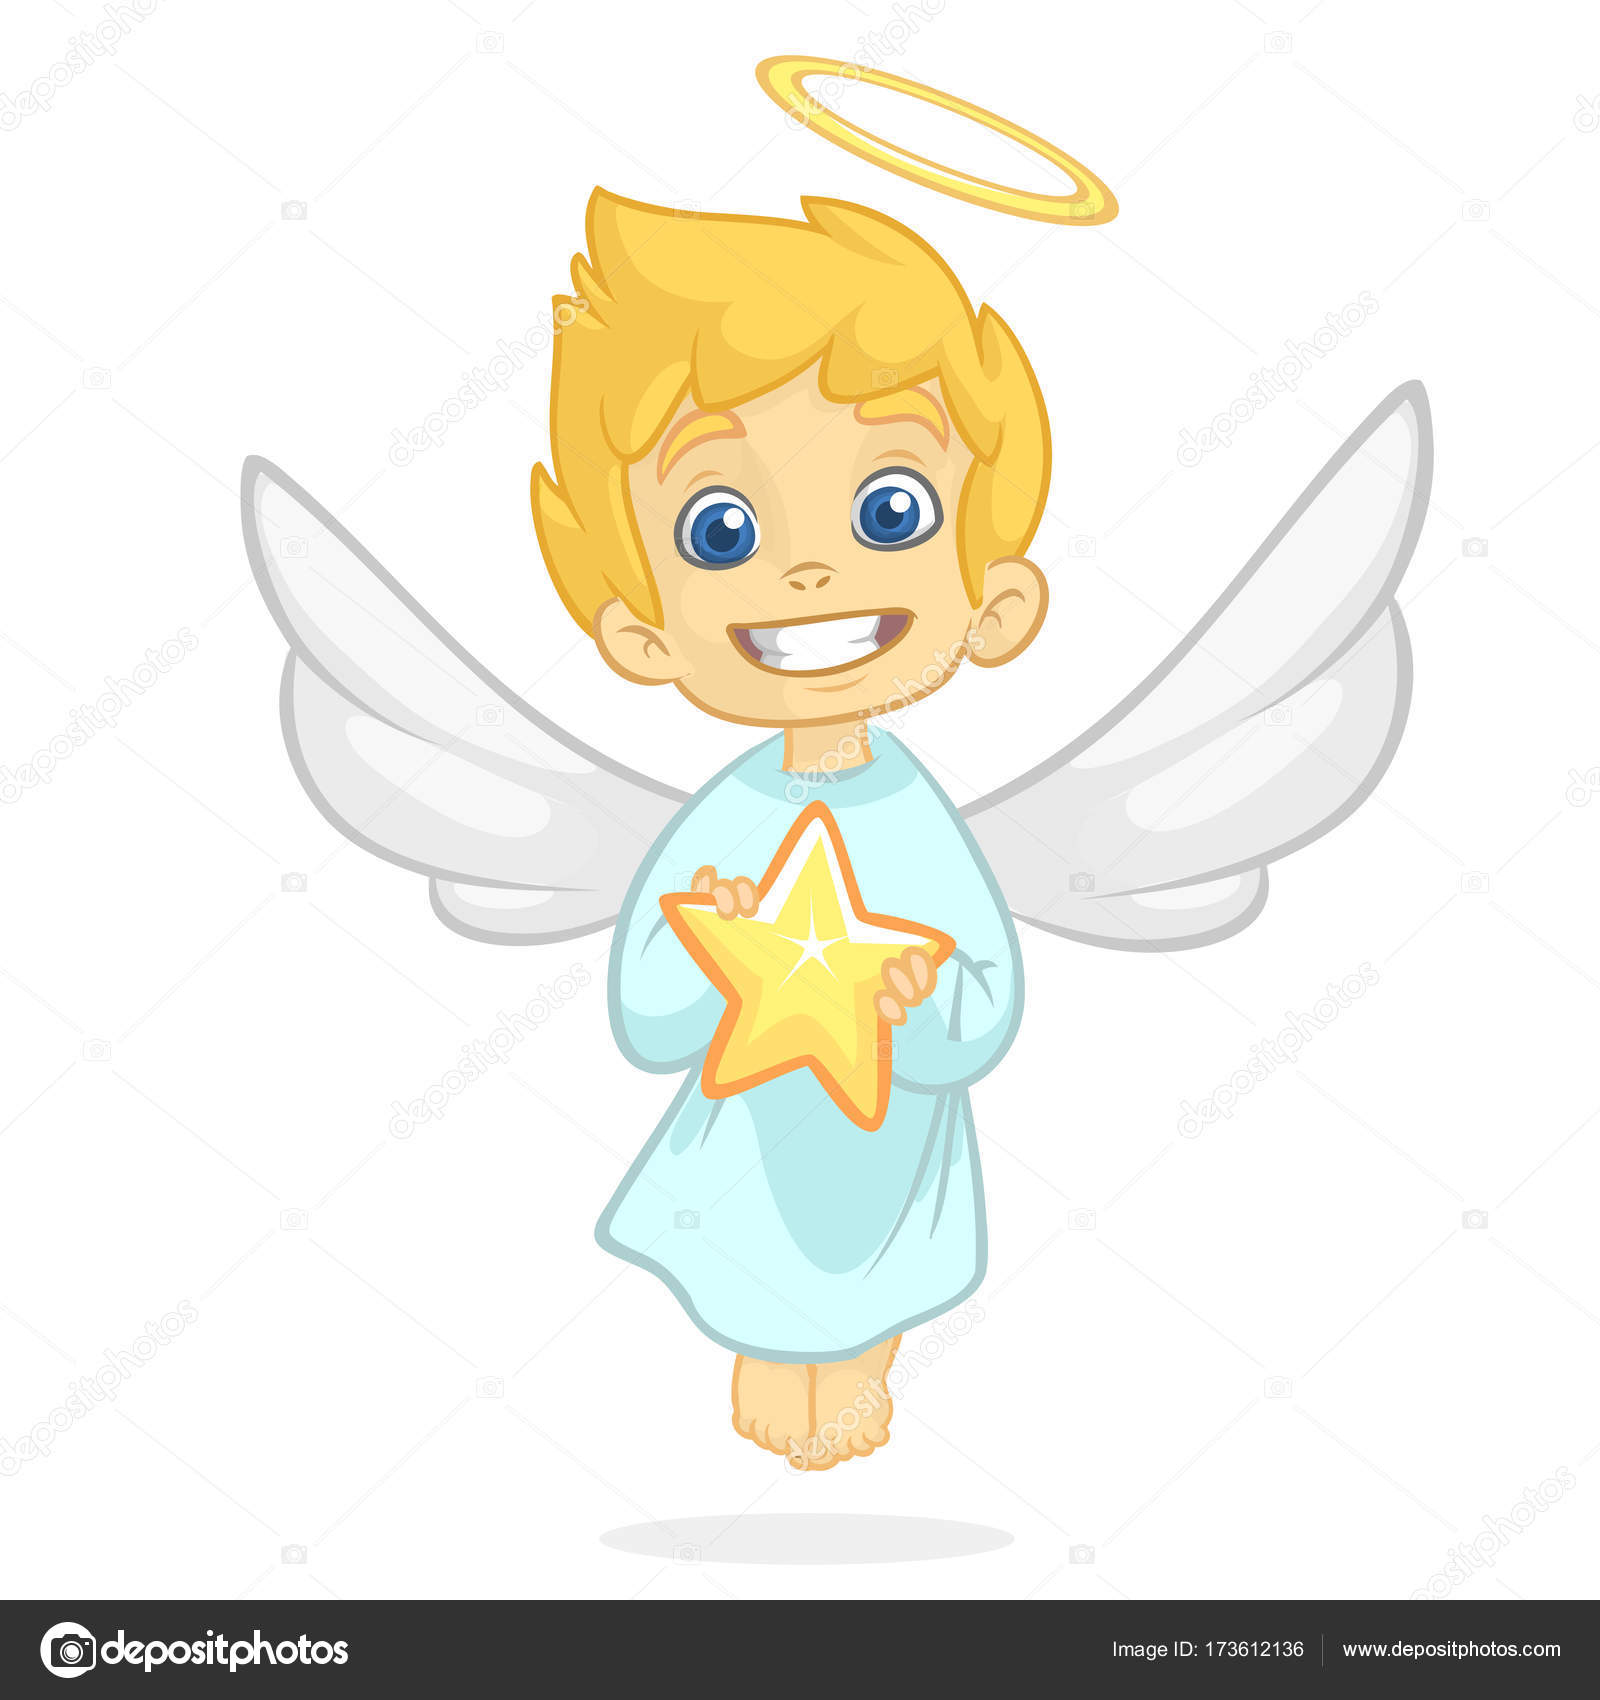 Ilustração dos desenhos animados de um anjo bonito segurando